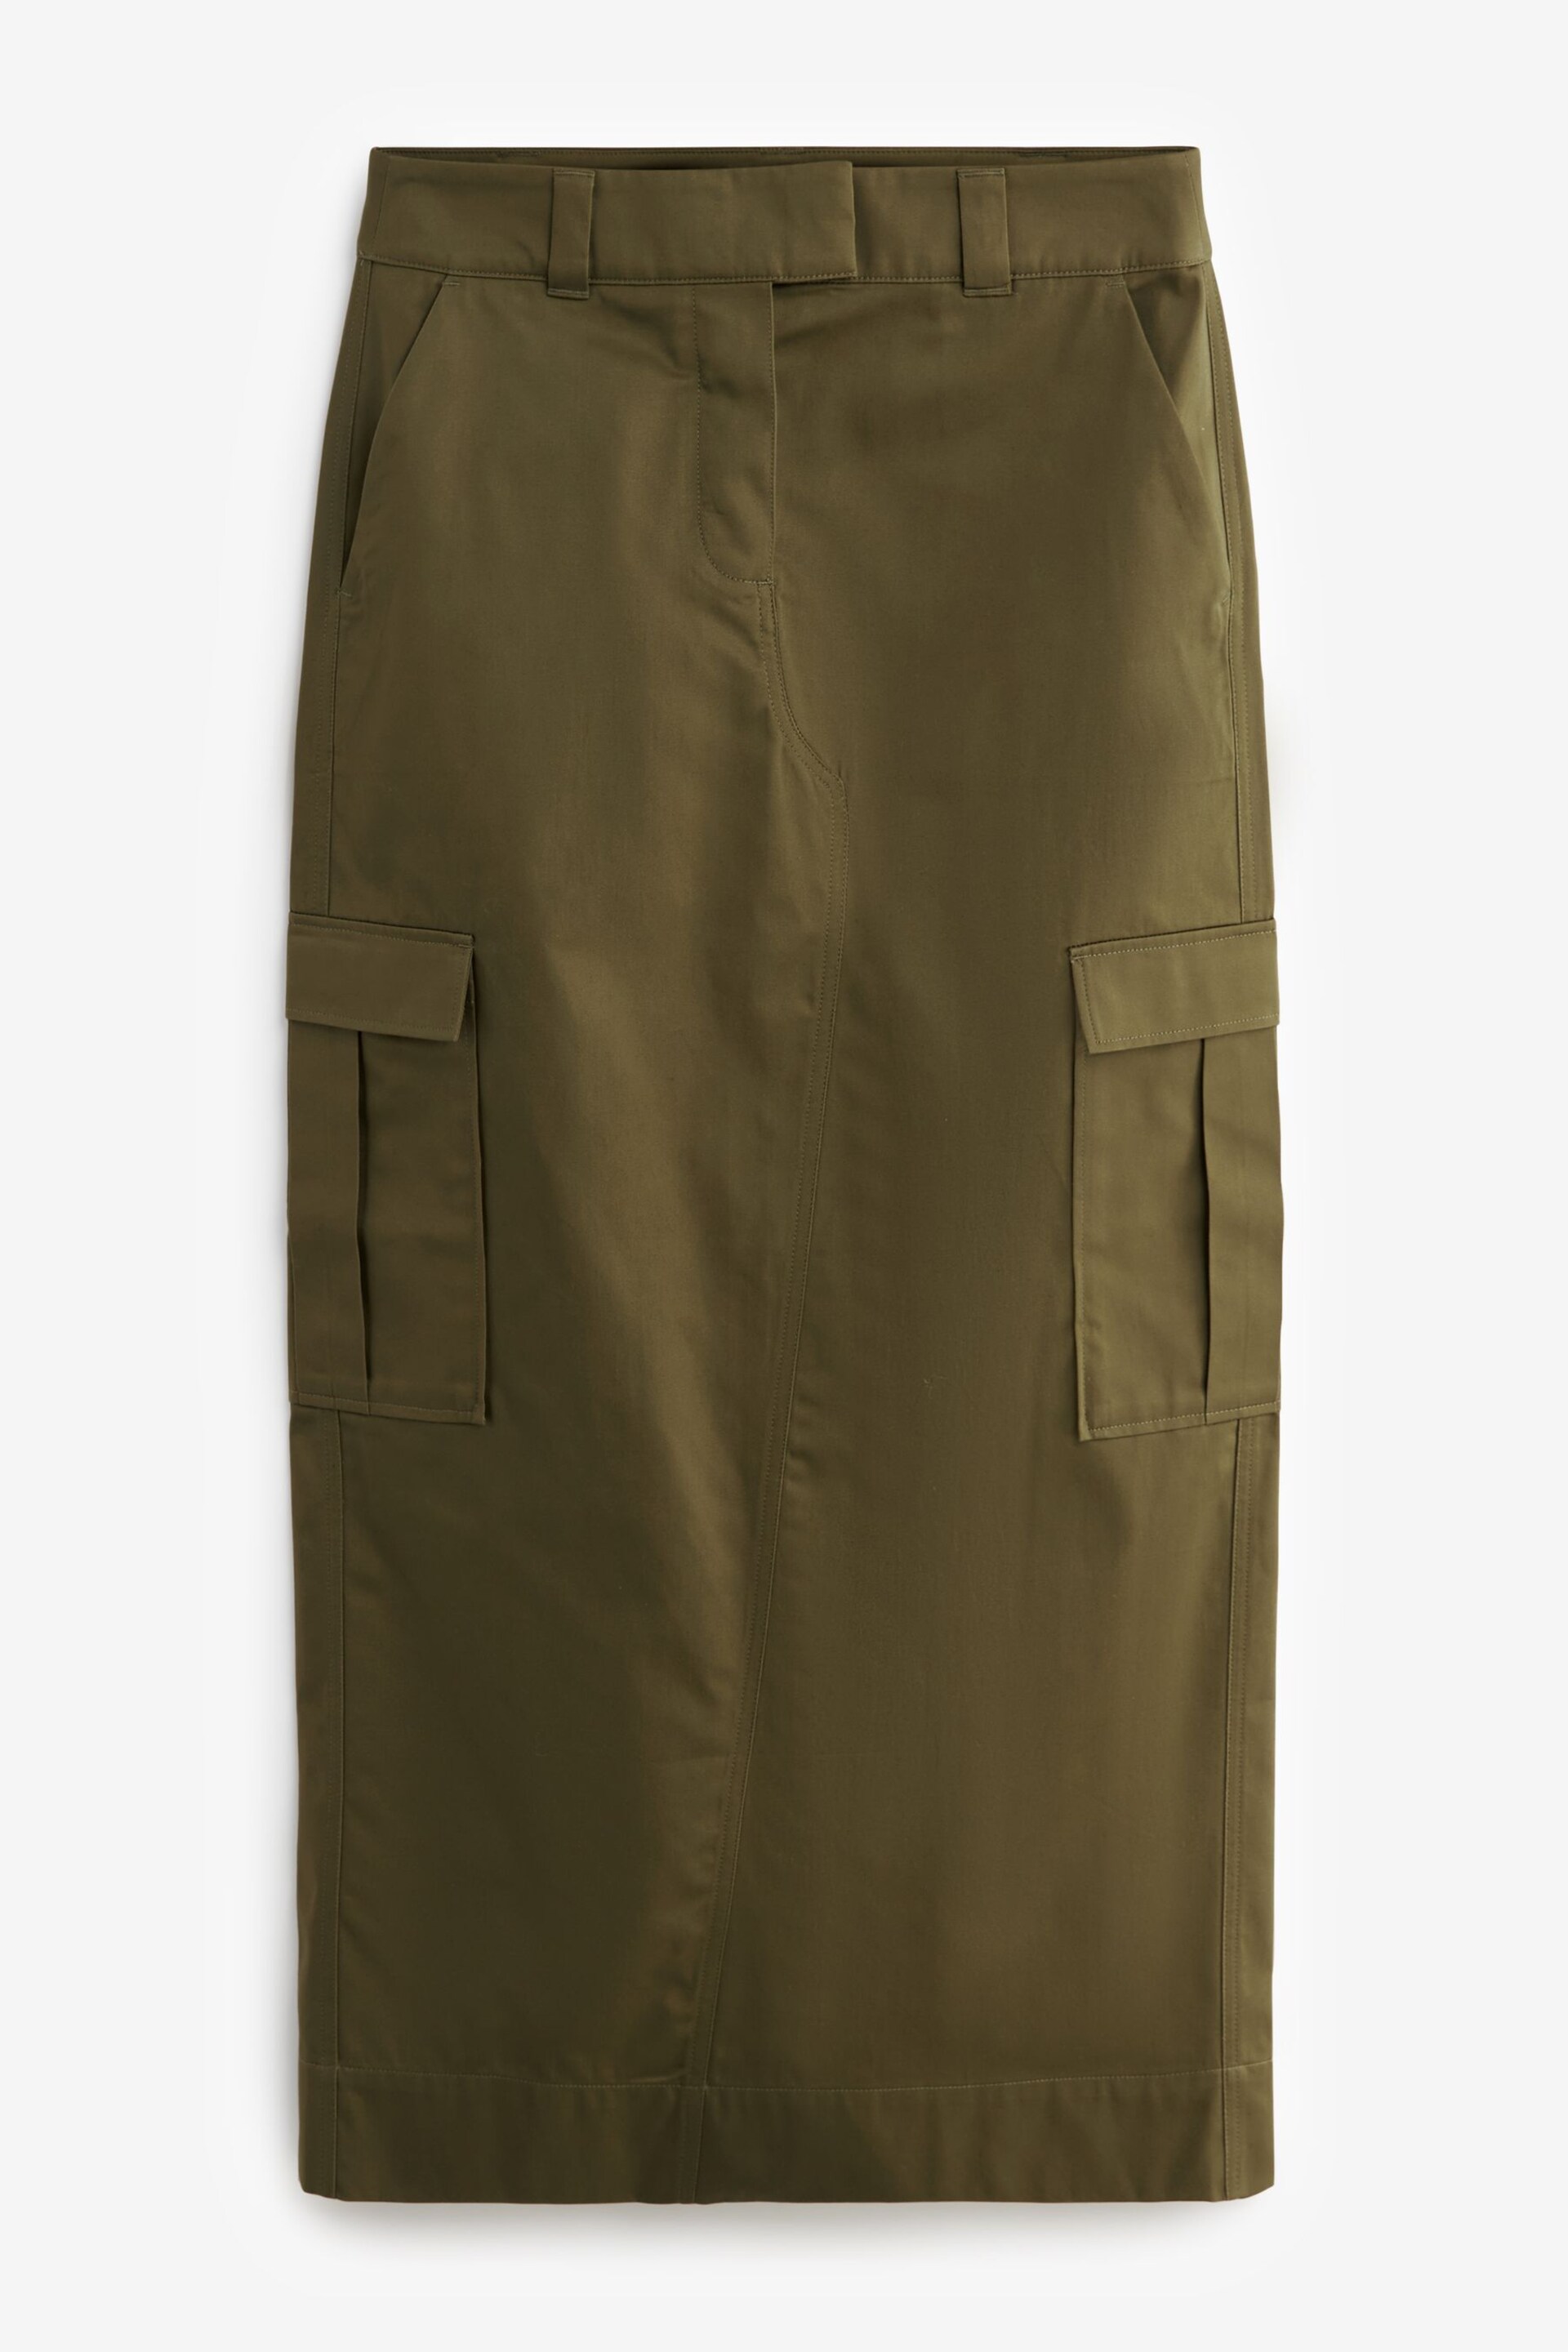 Khaki Green Utility Midi Skirt - Image 5 of 6